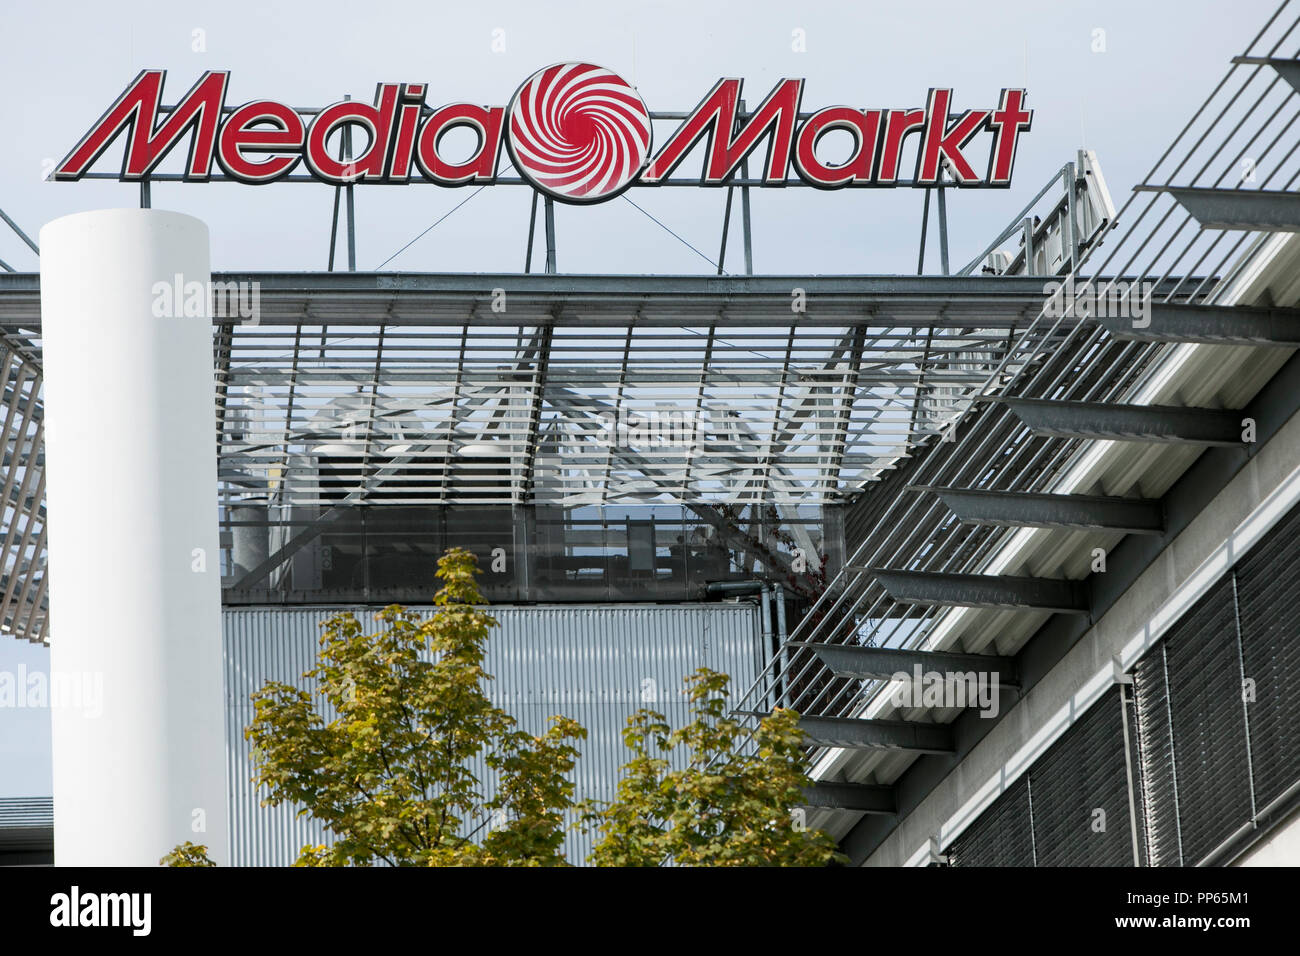 Sobre Media Markt – MediaMarkt